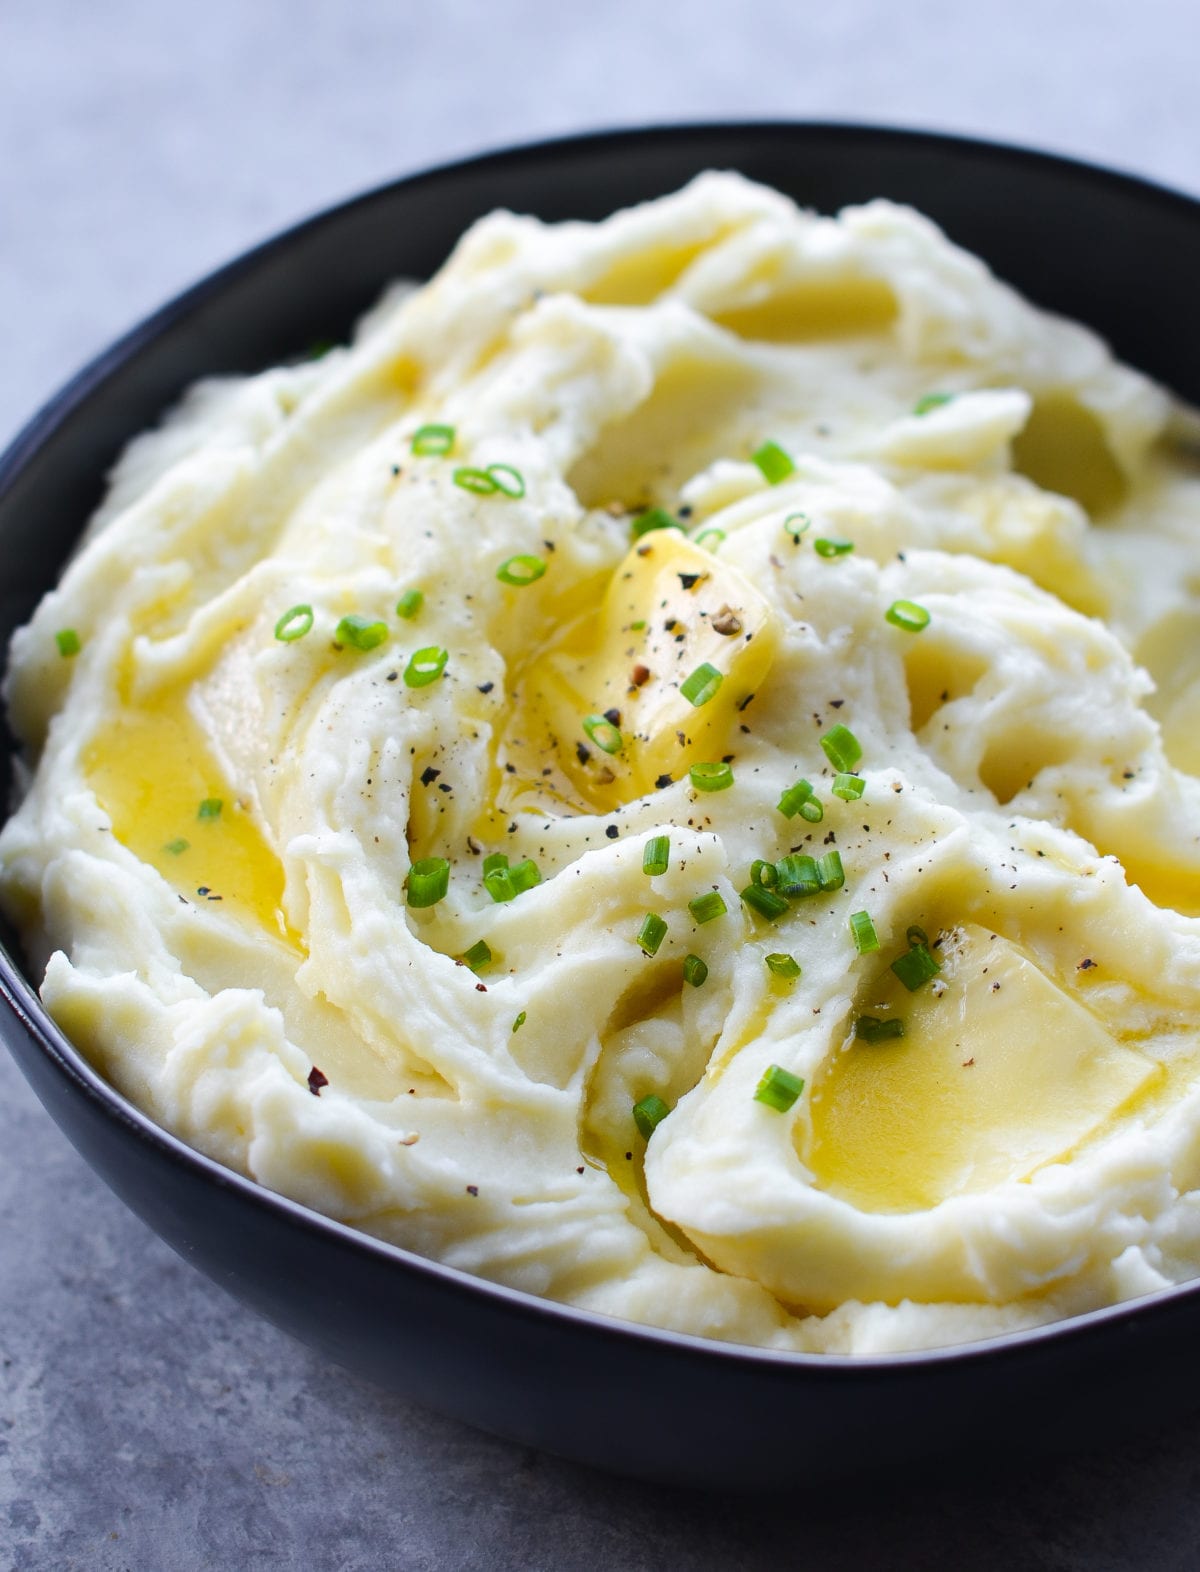 Best Mashed Potatoes using a KitchenAid 